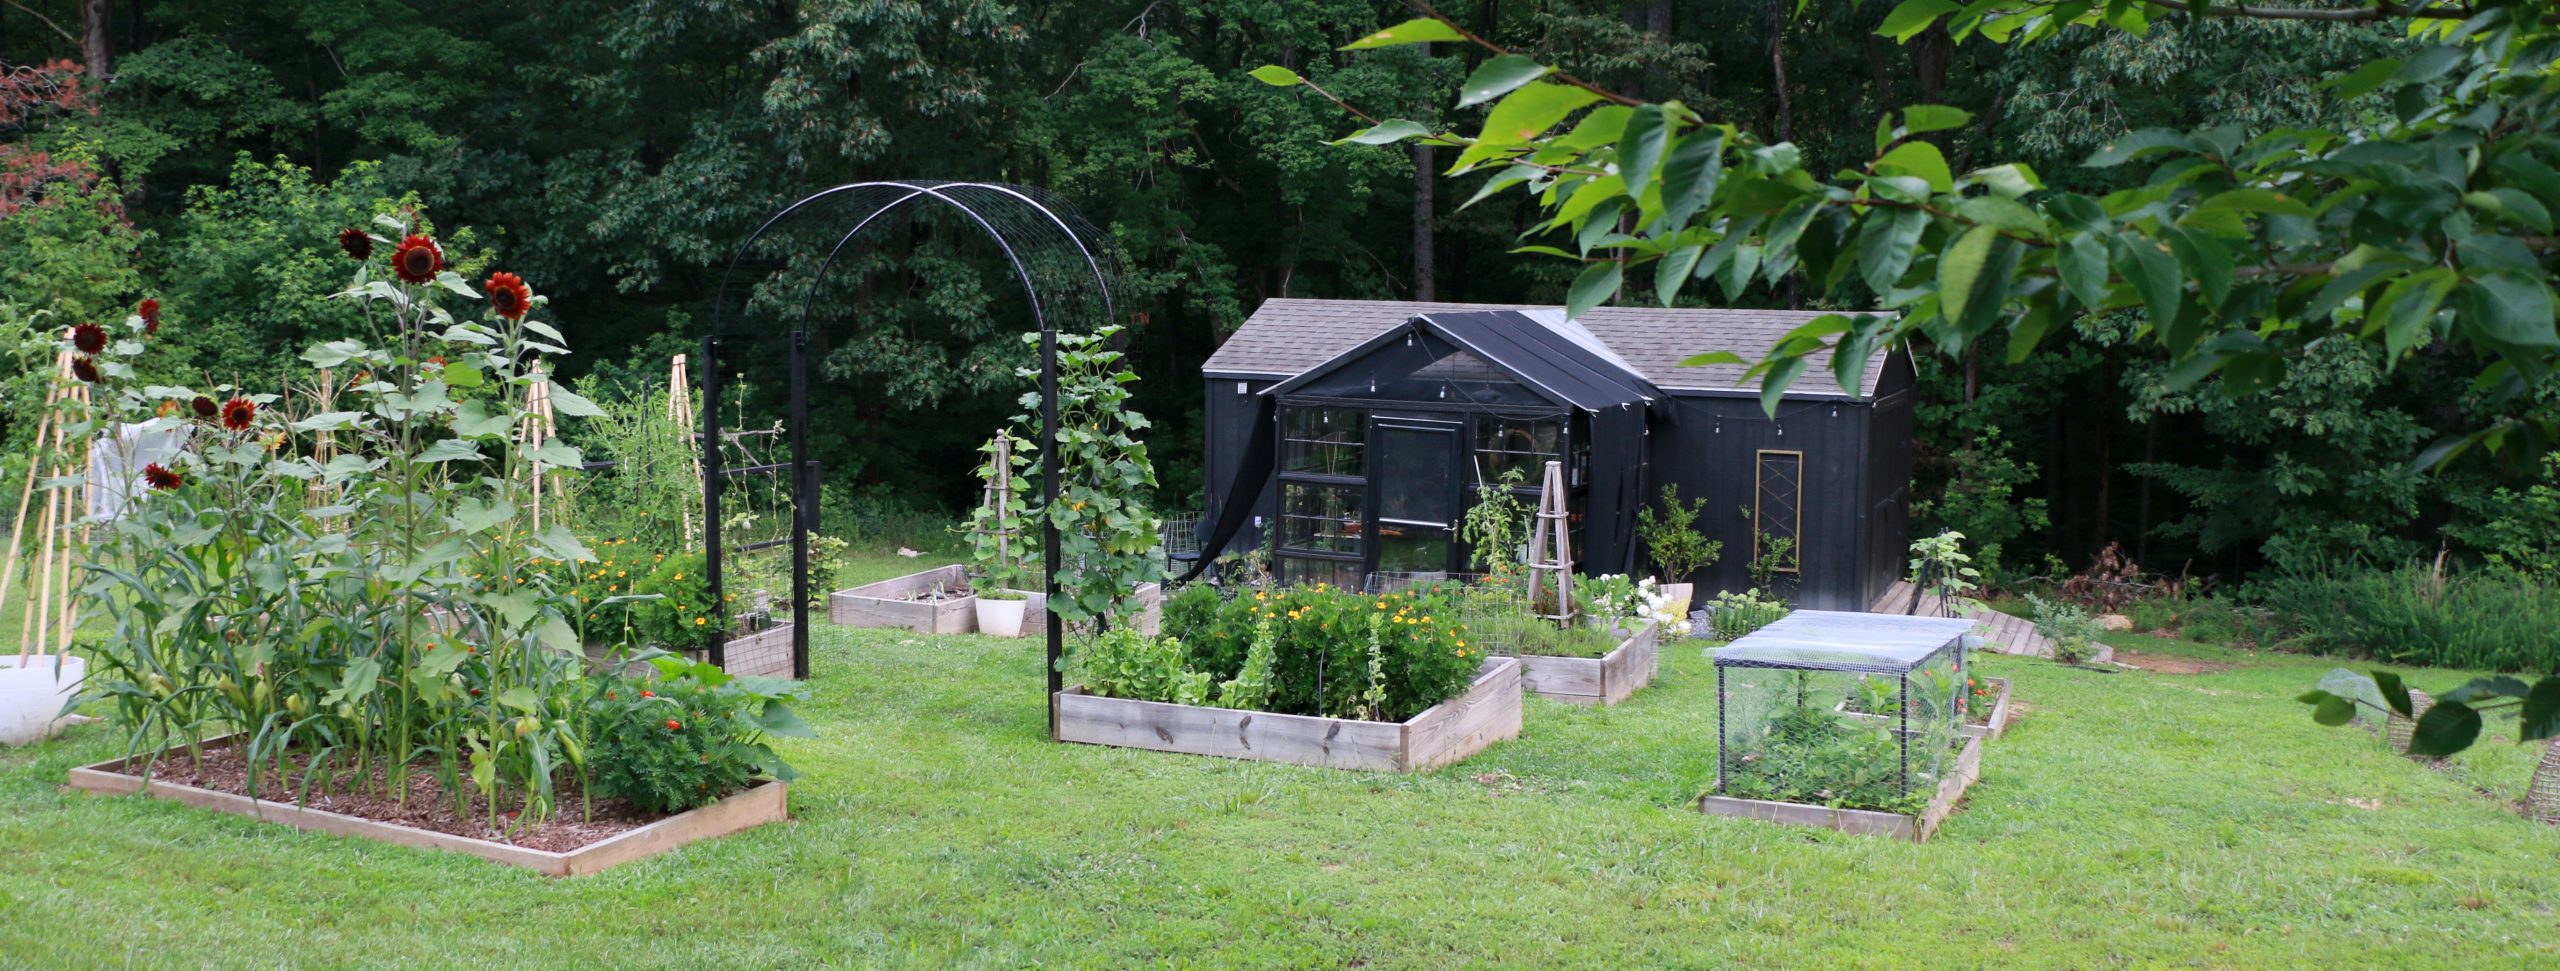 DIY Garden Signs With The Cricut Maker